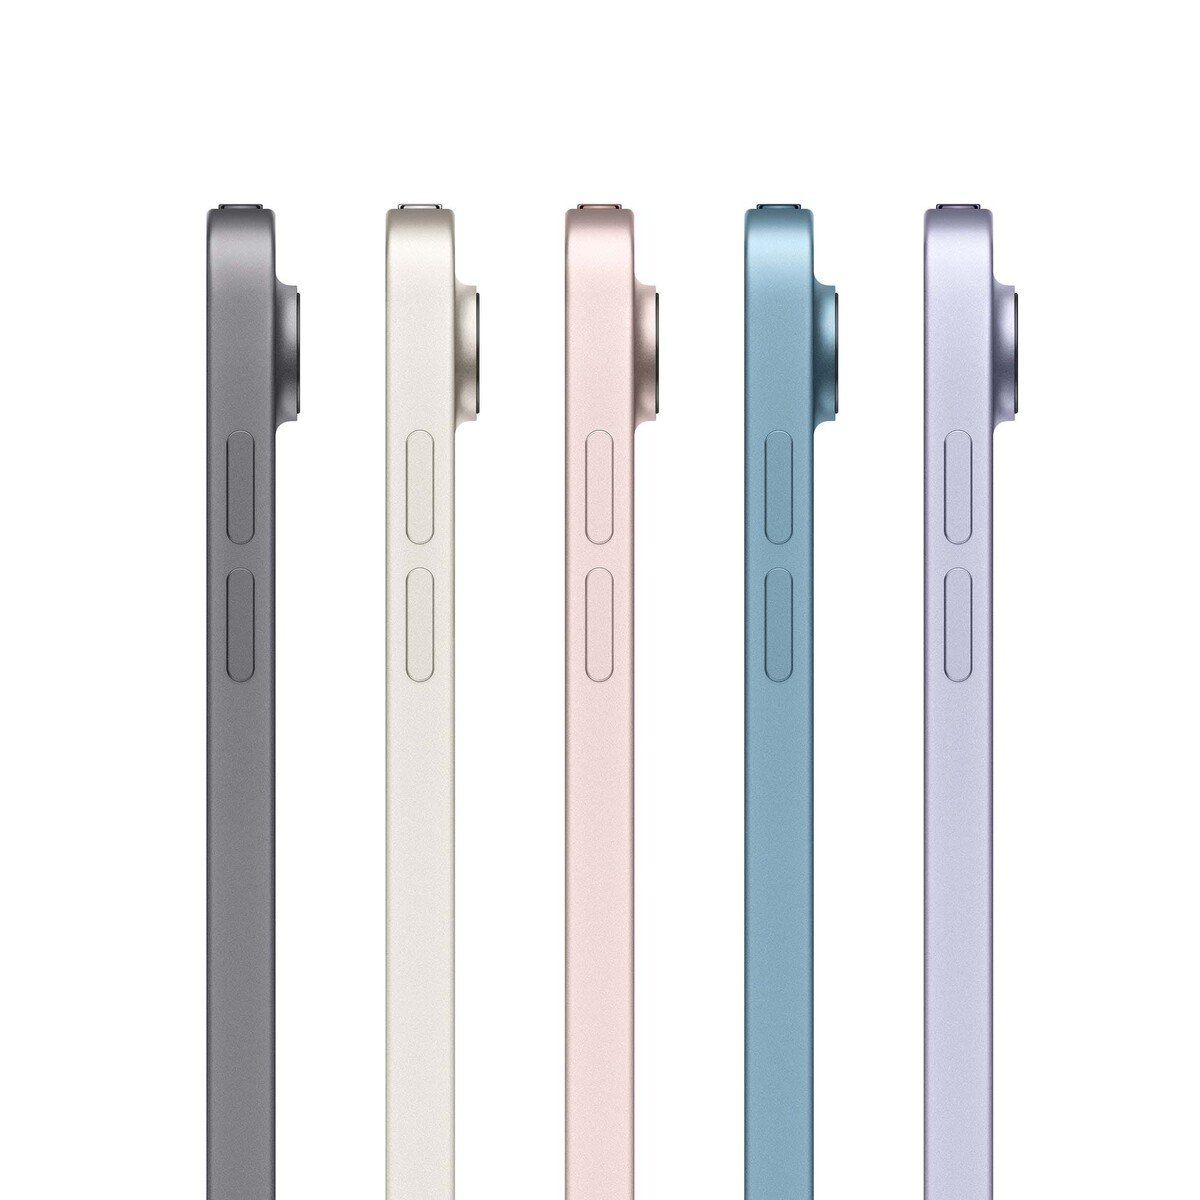 Apple iPad Air (2022) 10.9-inchch Wi-Fi  256GB Starlight